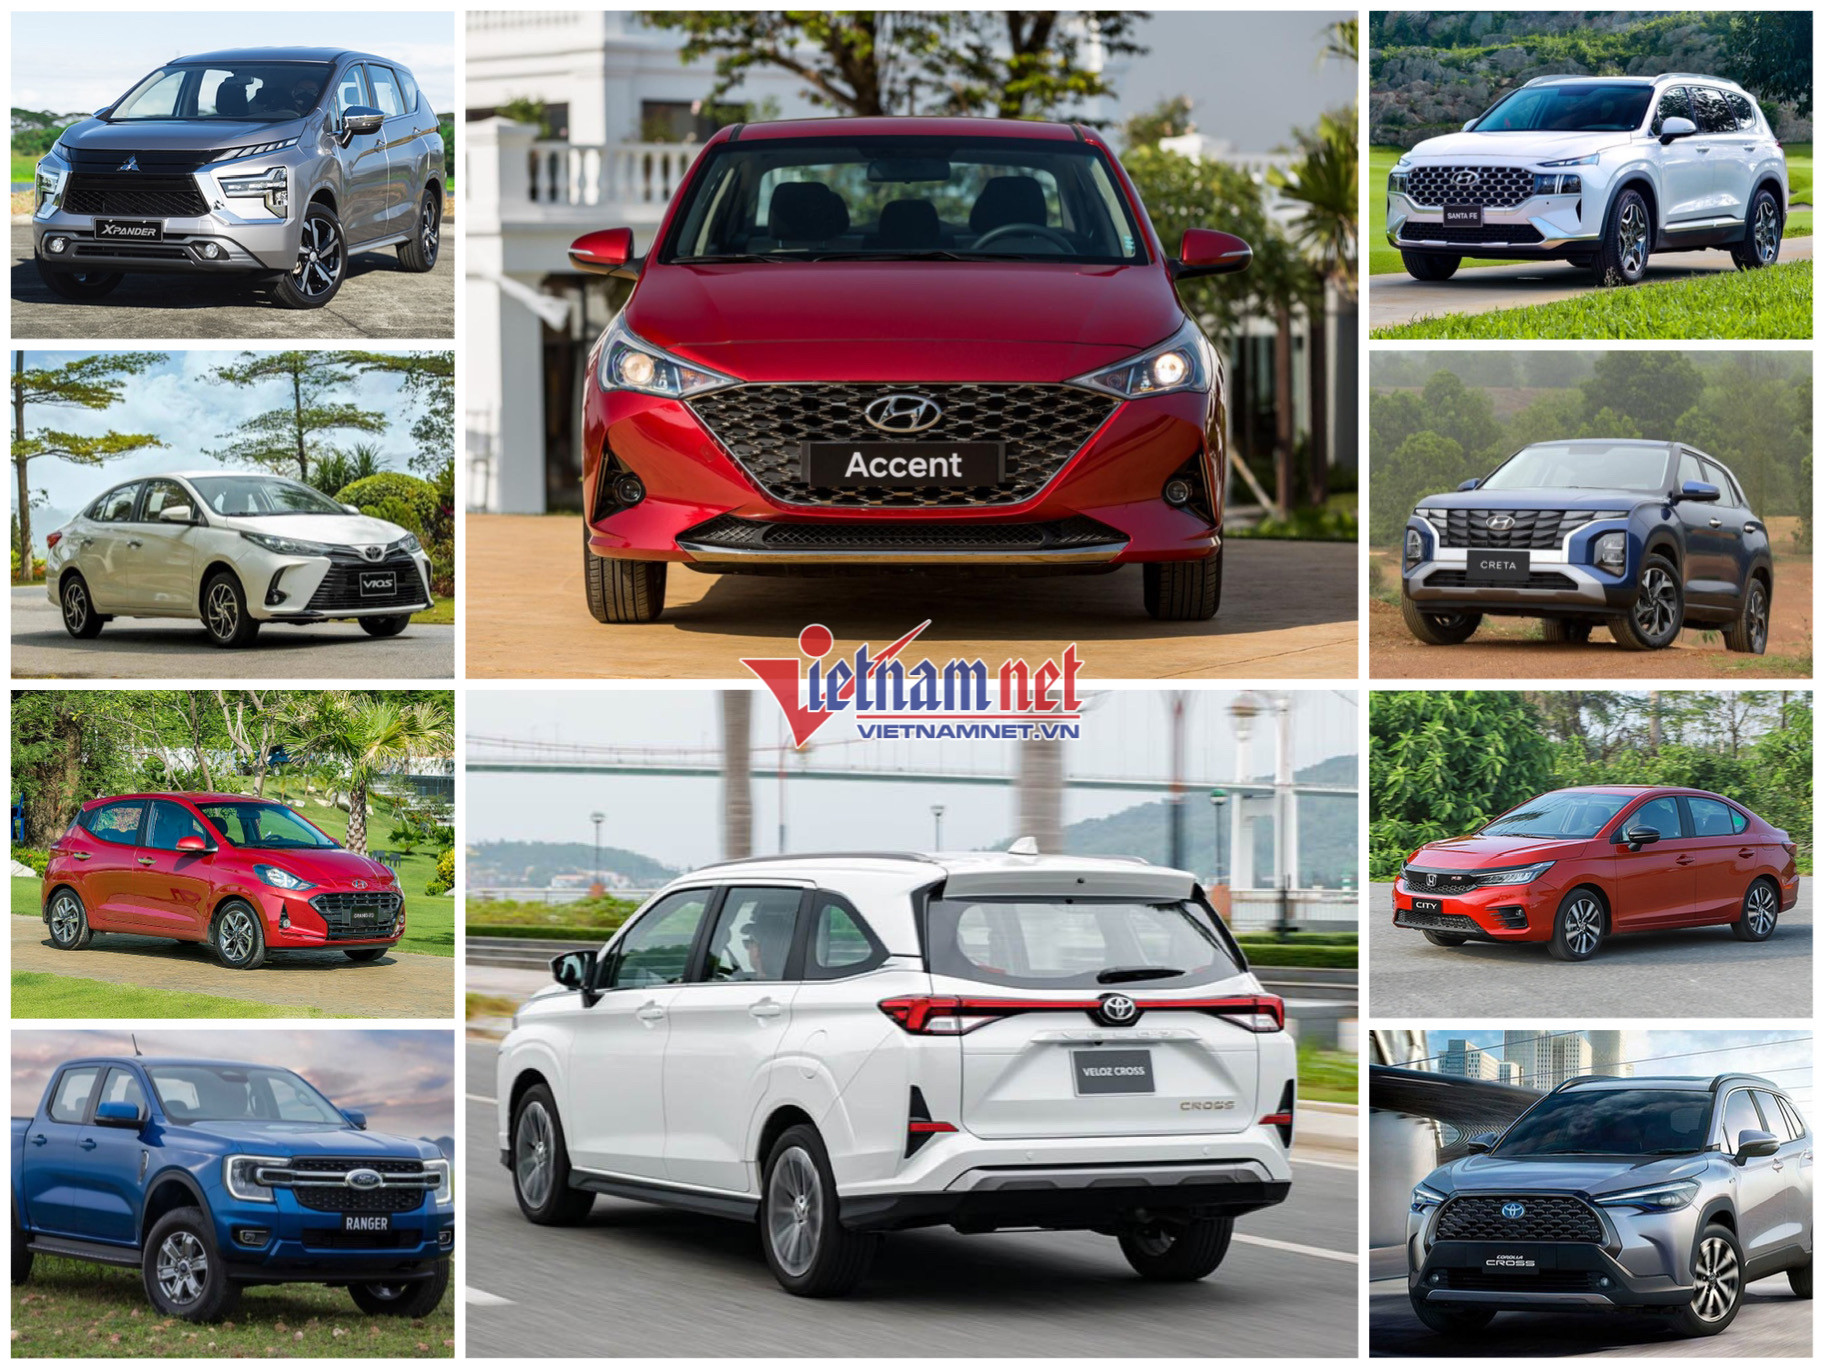 Top 10 Xe Bán Chạy Tháng 9: Hyundai Accent Dẫn Đầu, Mpv Cỡ Nhỏ Lên Ngôi